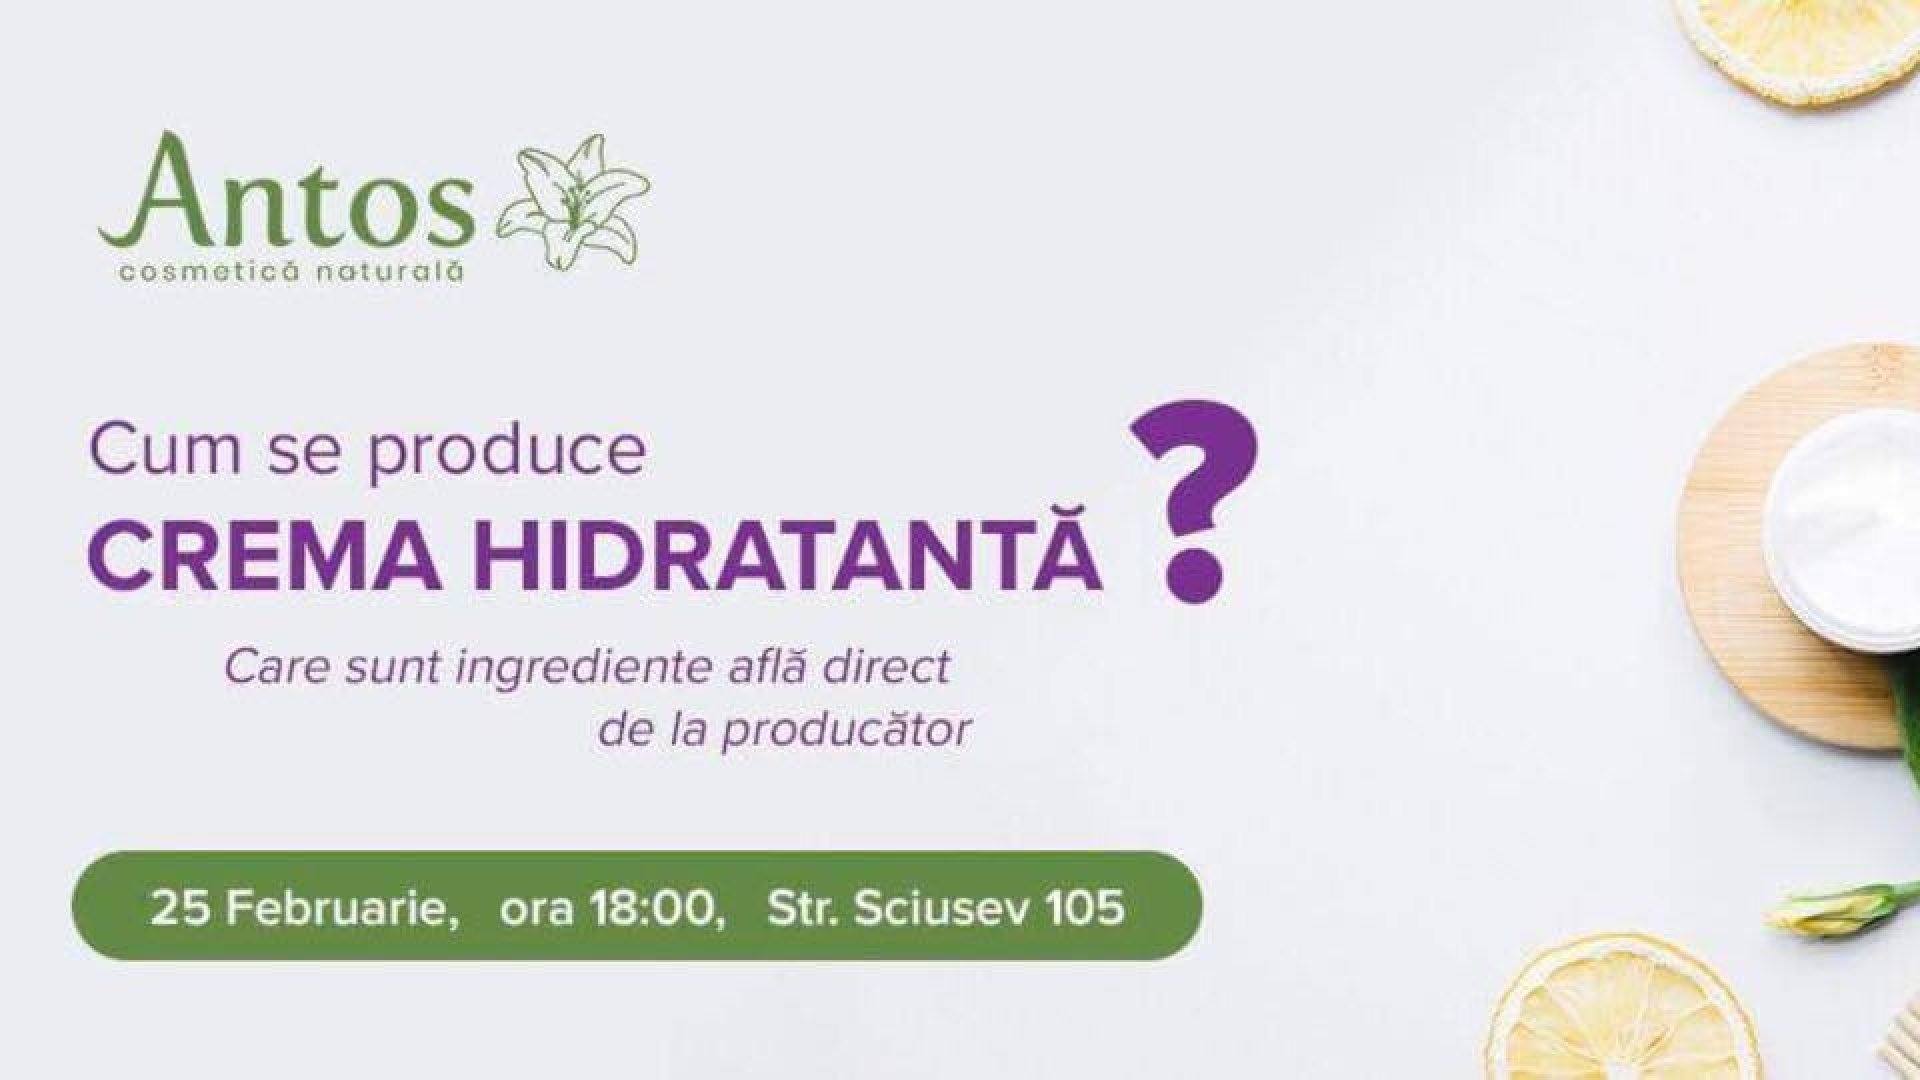 Cum se produce Crema Hidratanta?